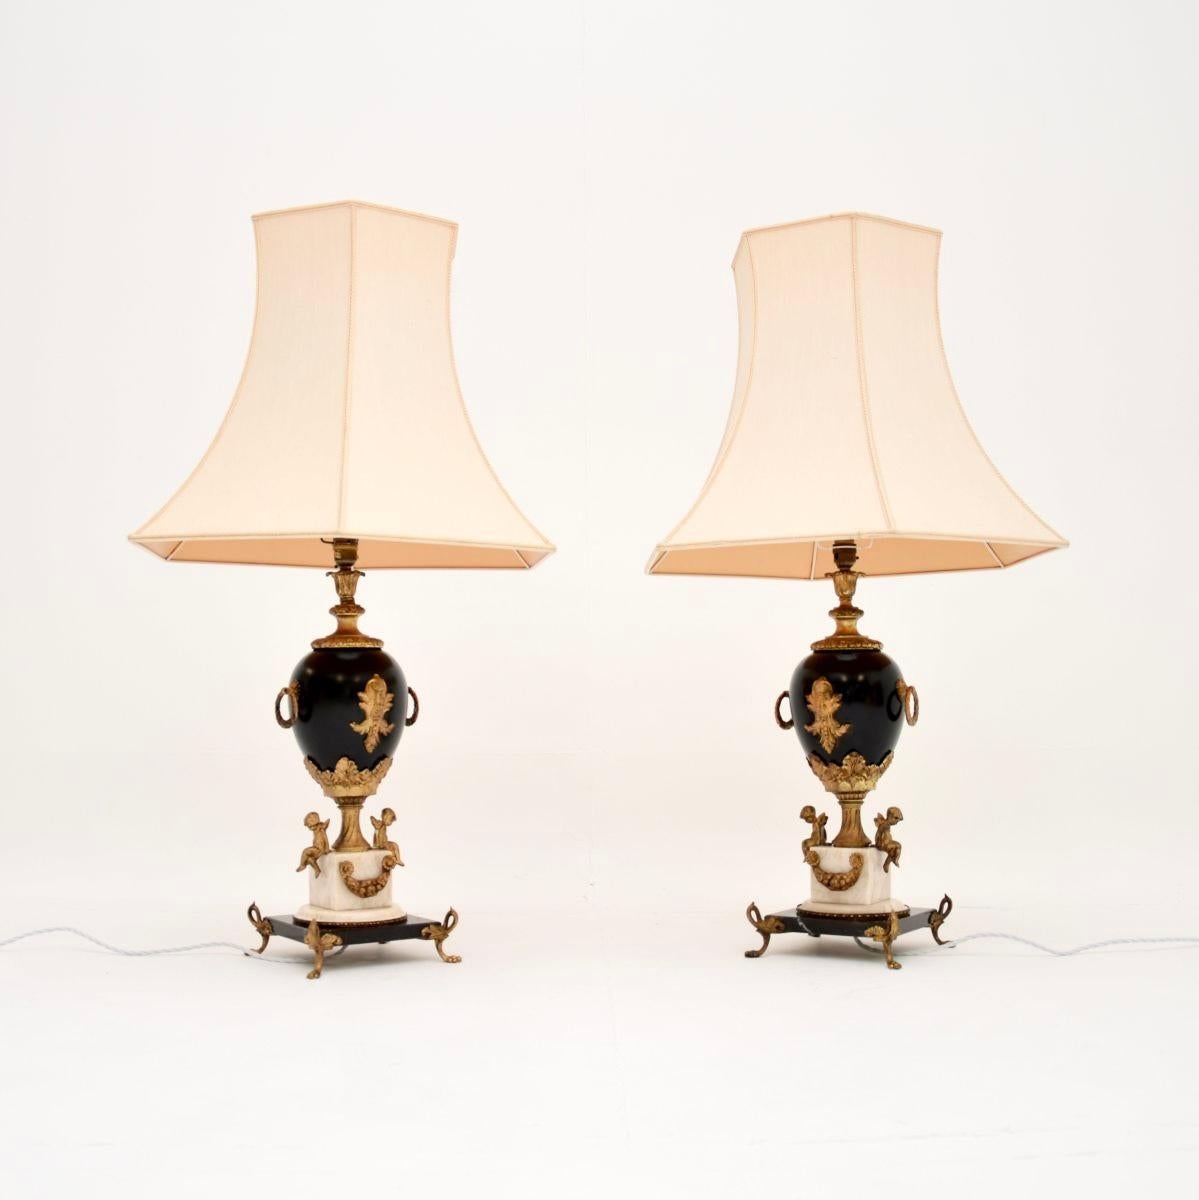 Ein beeindruckendes und großes Paar antiker französischer Marmortischlampen aus den 1930er Jahren.

Sie haben eine tolle Größe und sind schön gestaltet, die Qualität ist fantastisch. Sie stehen auf Marmorsockeln mit prächtigen vergoldeten